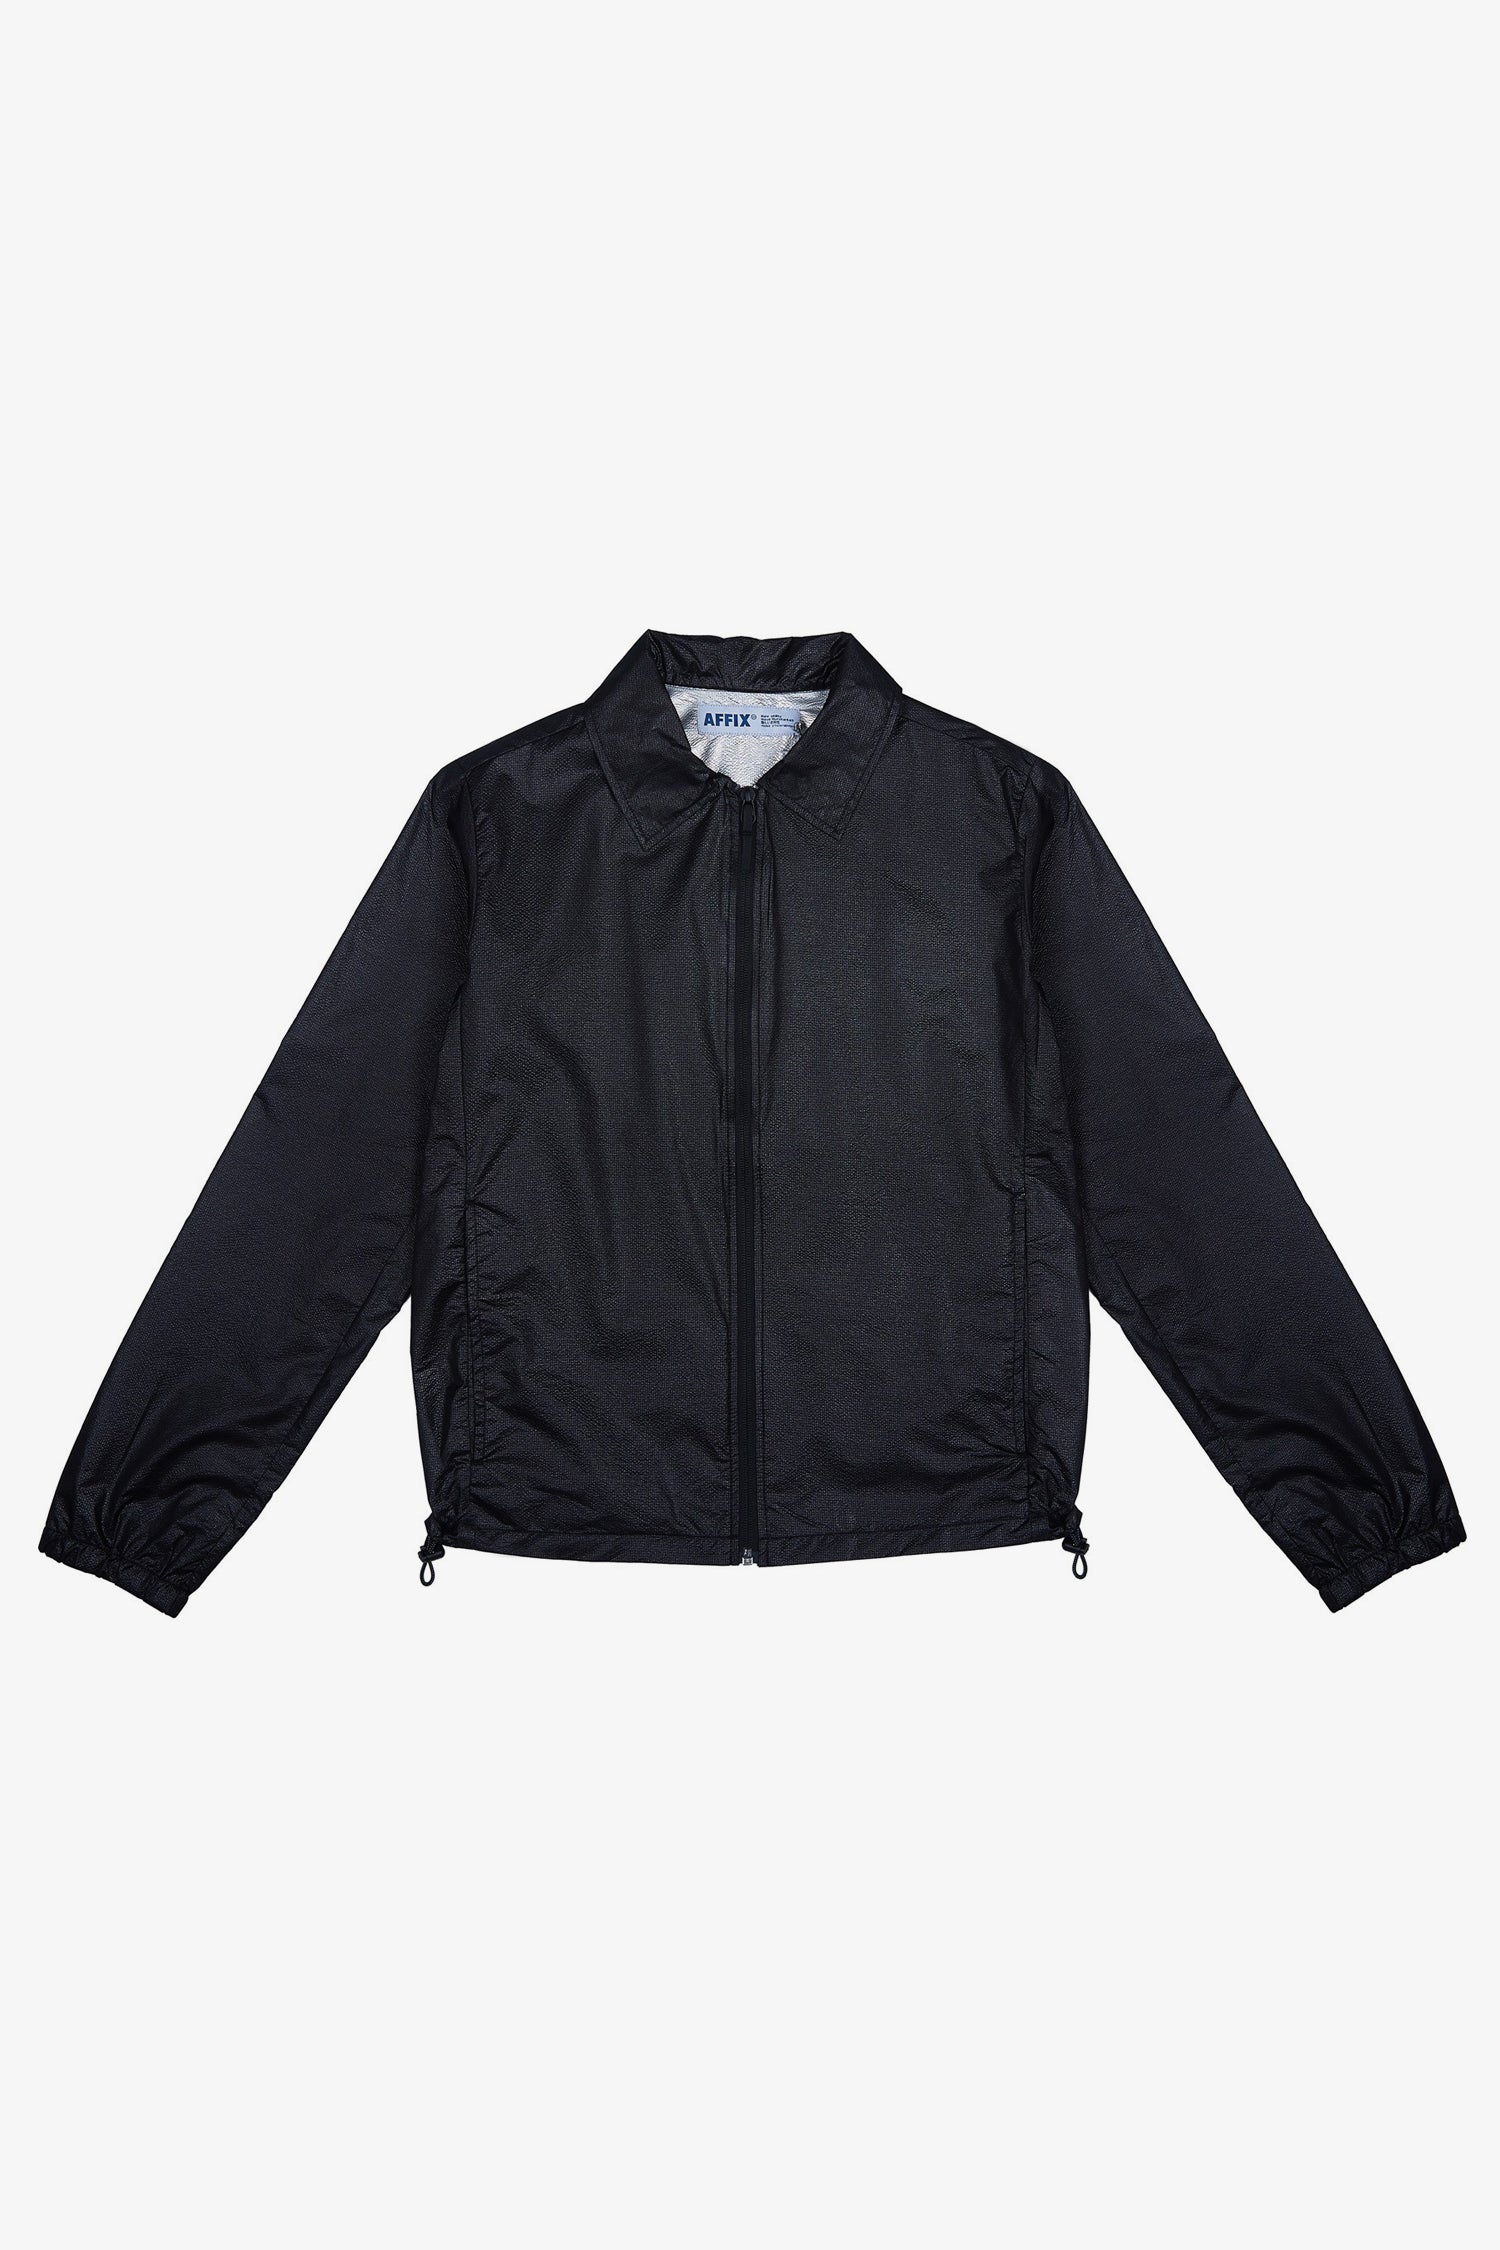 Selectshop FRAME - AFFIX Technical Coach Jacket Outerwear Dubai